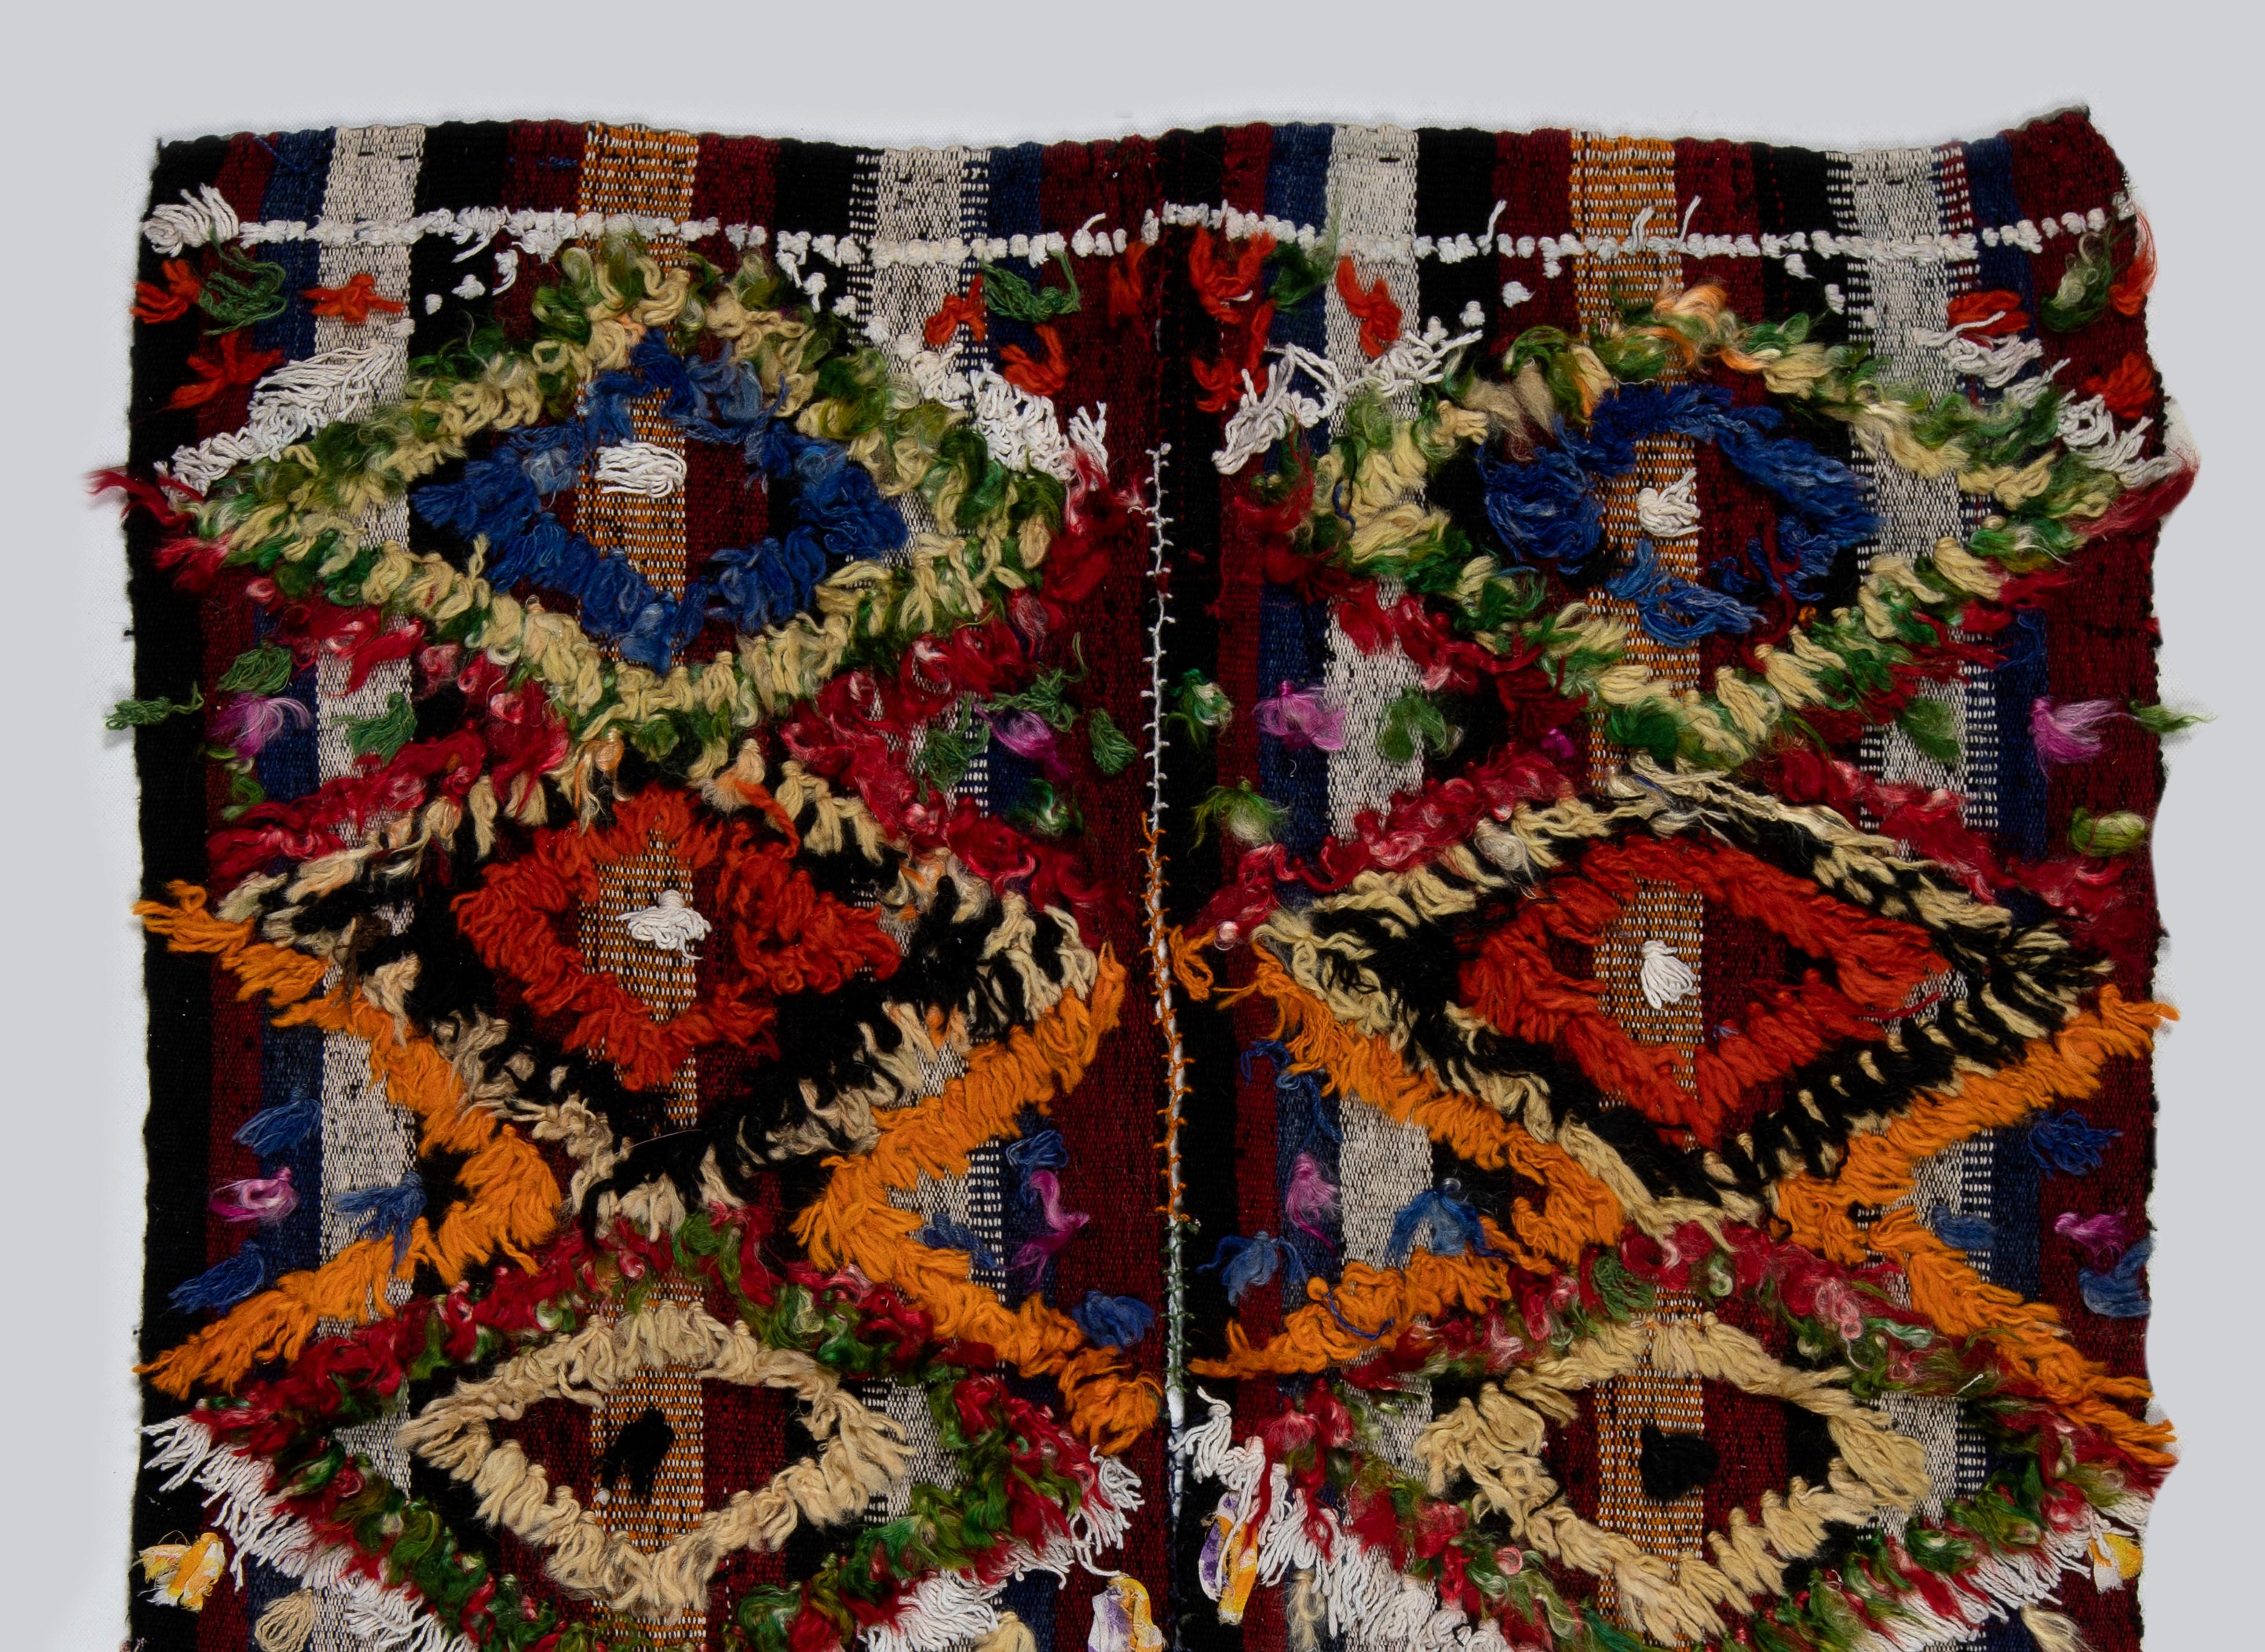 Dieser lebendige handgewebte Teppich wurde von kurdischen Dorfbewohnern in der Zentraltürkei im dritten Viertel des 20. Jahrhunderts für den täglichen Gebrauch hergestellt. Diese prächtigen alten Webarbeiten wurden auf verschiedene Weise verwendet,